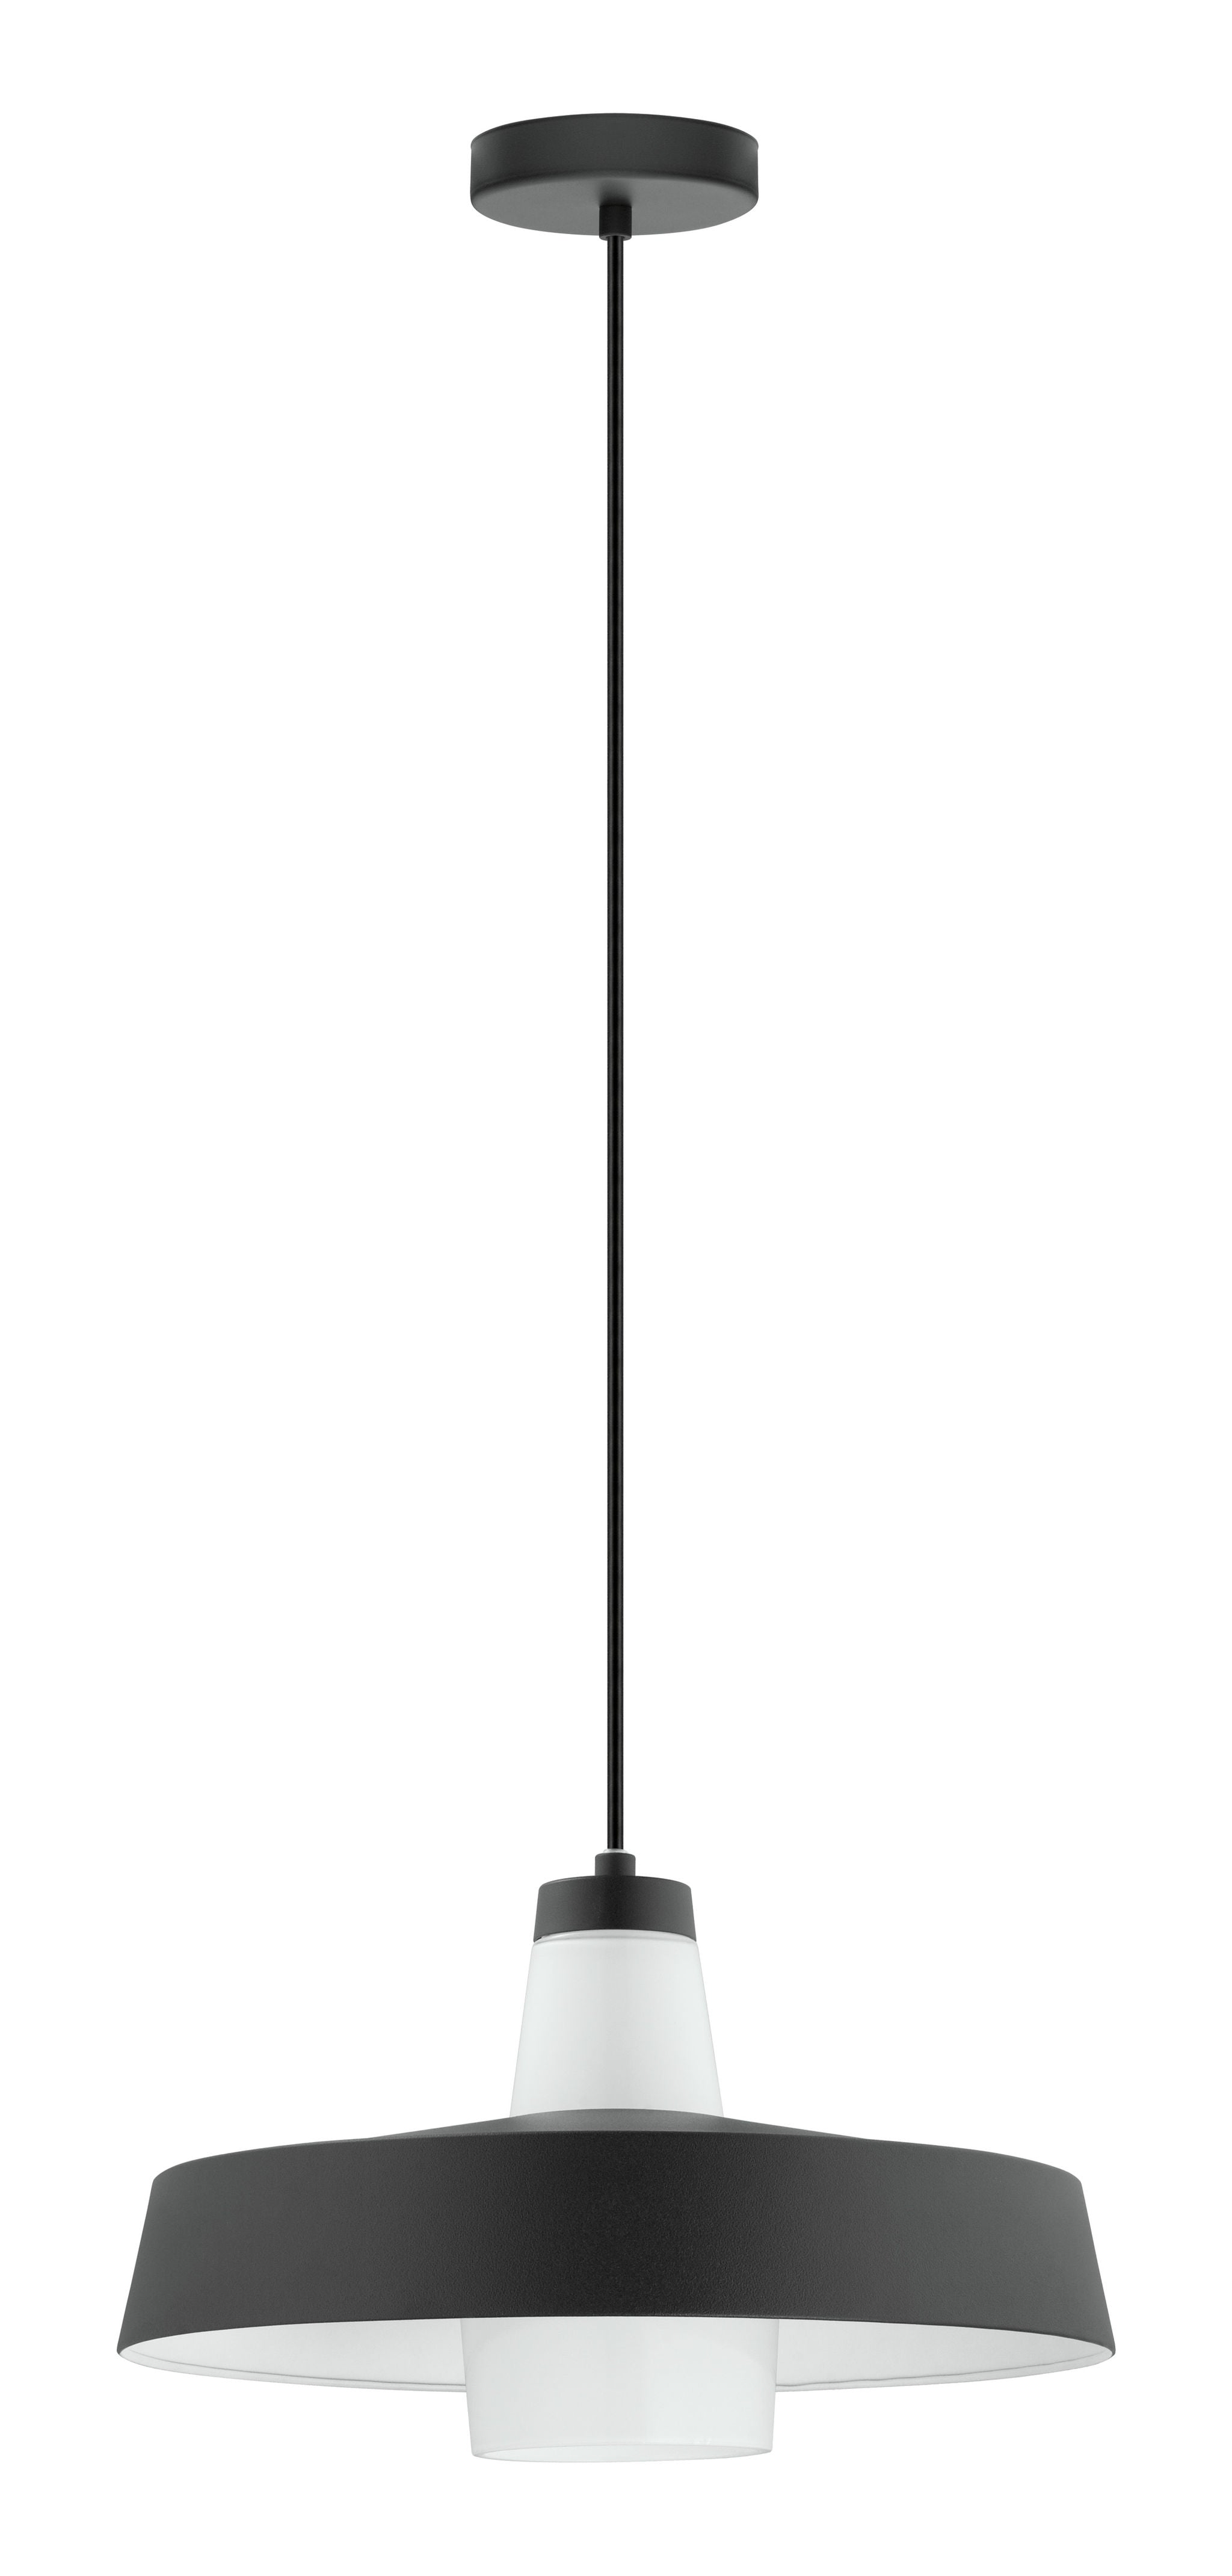 Tabanera Suspension simple Noir - 96803A | EGLO